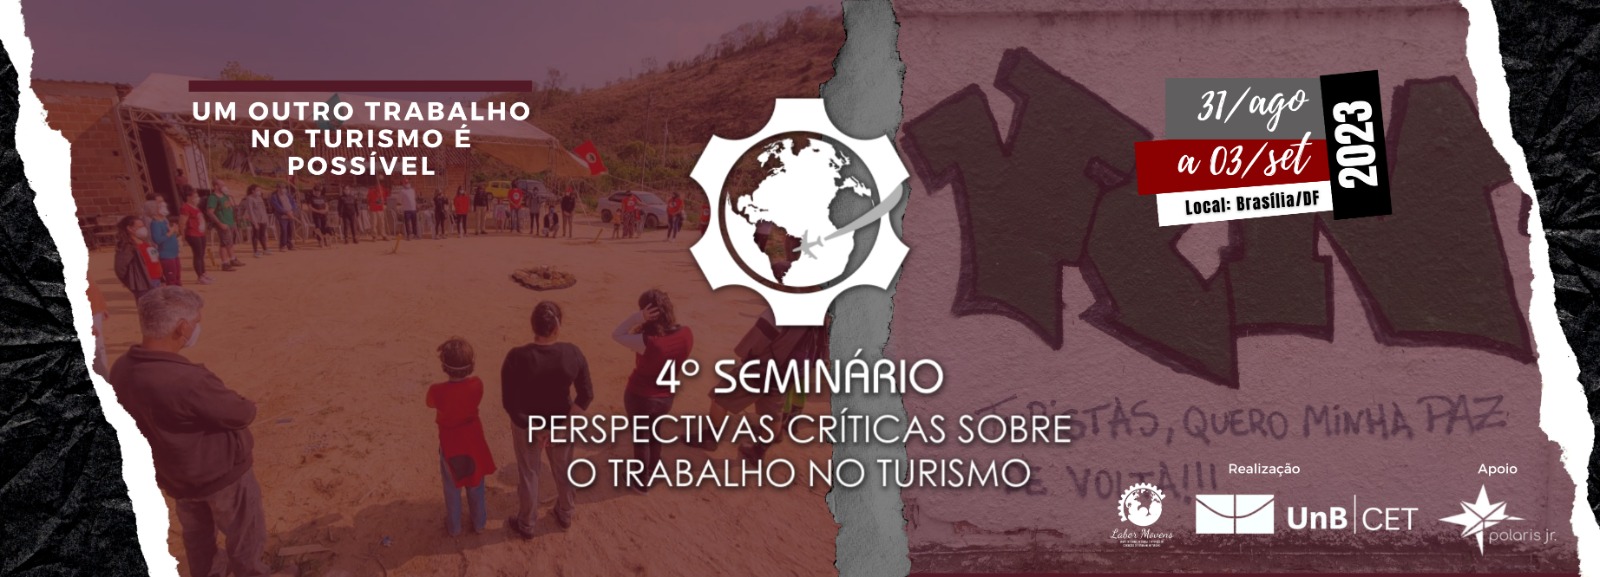 4º Seminário “Perspectivas Críticas sobre o Trabalho no Turismo”